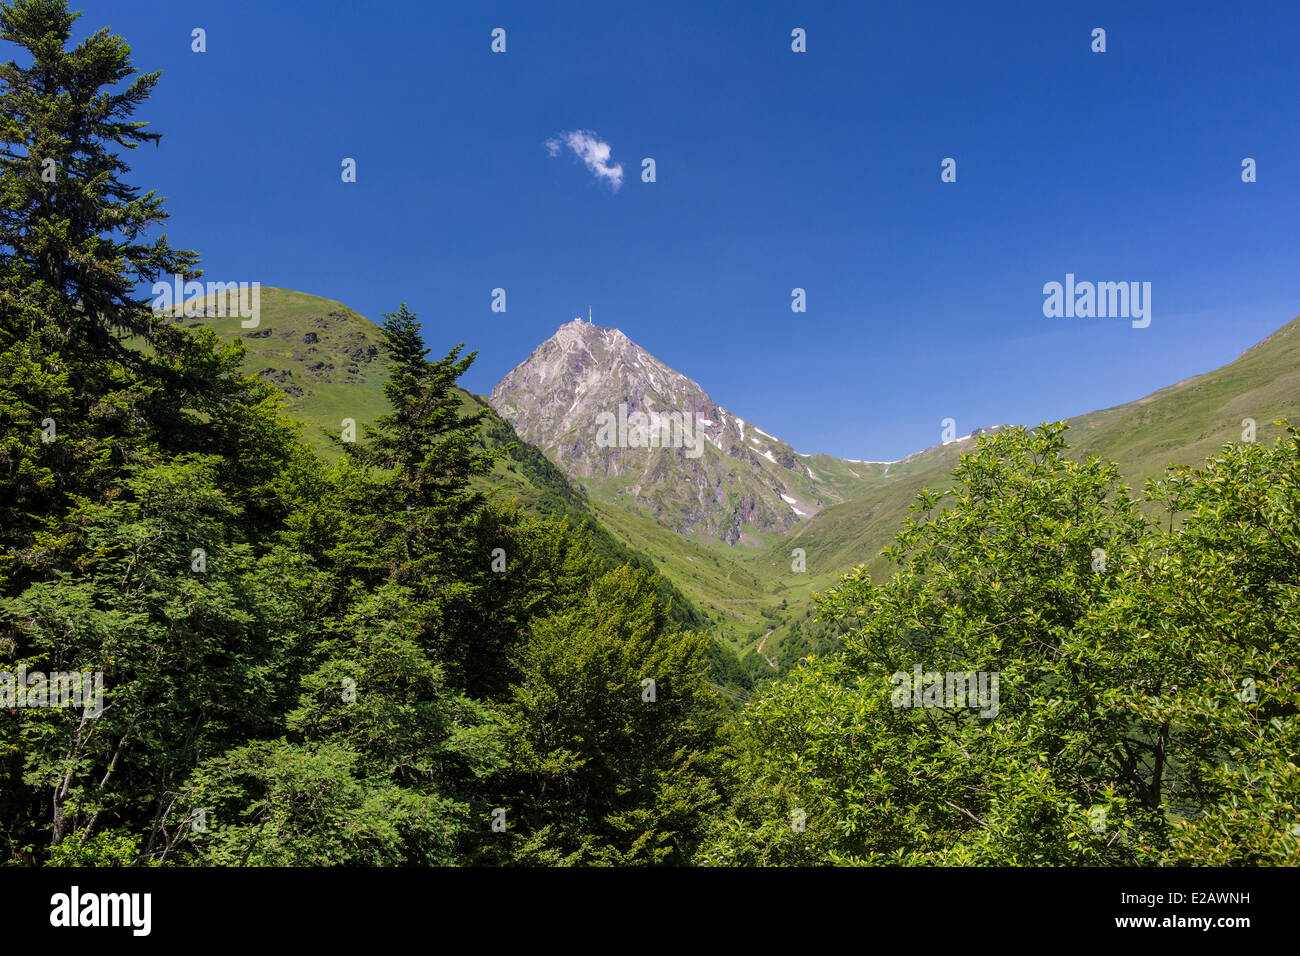 Francia, Hautes Pyrenees, Bagneres De Bigorre, el Pic du Midi (2877m) Foto de stock